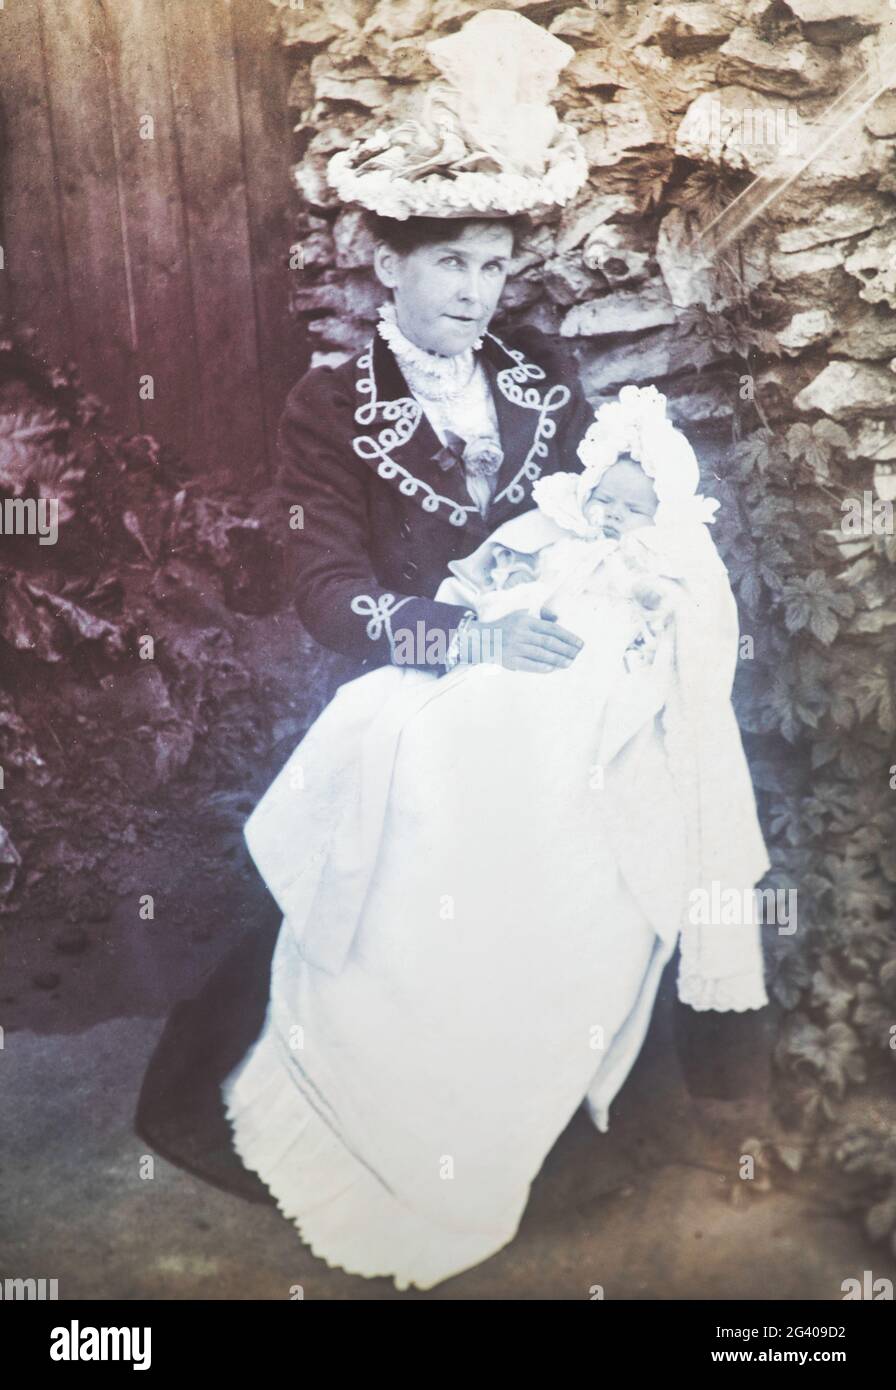 Début du XXe siècle authentique photo vintage de mère tenant bébé assis dans le jardin. Concept de l'entretien, de la compassion, de l'amour, de la convivialité, de la nostalgie Banque D'Images